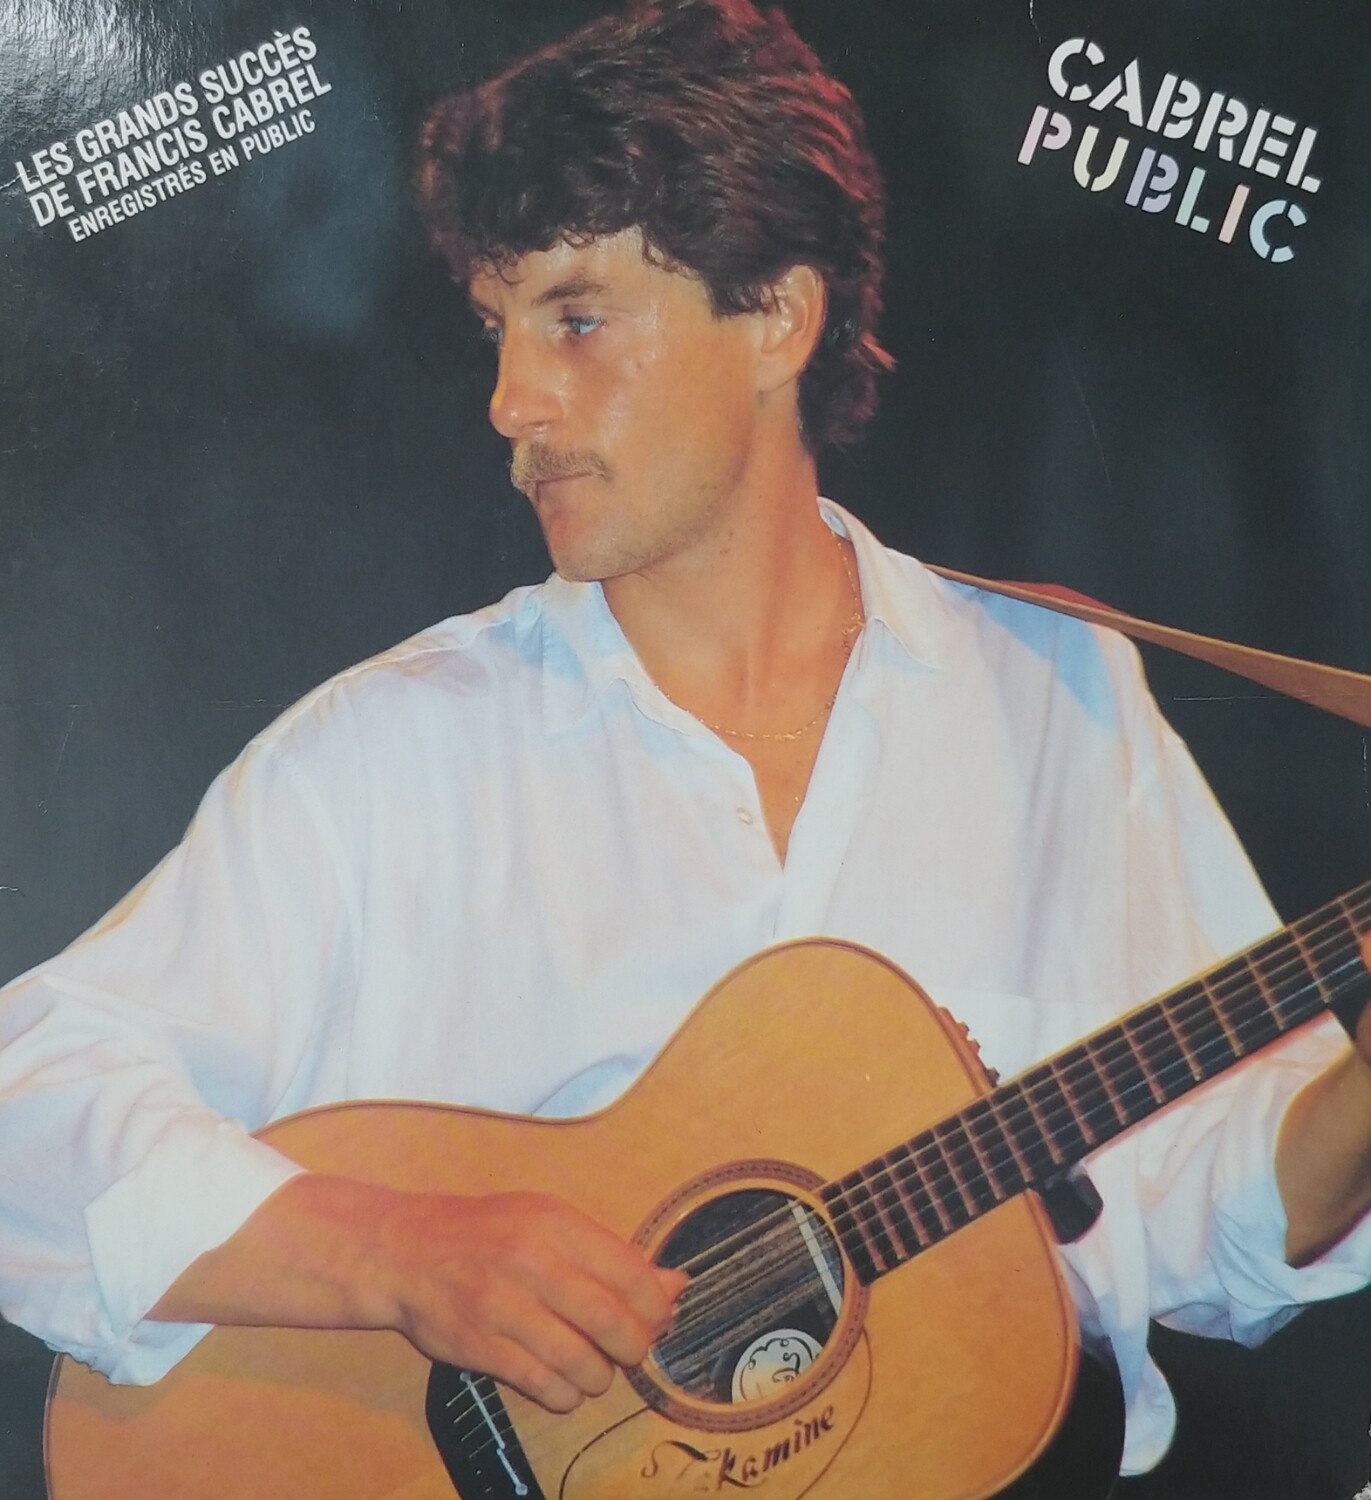 Francis Cabrel - Cabrel Public